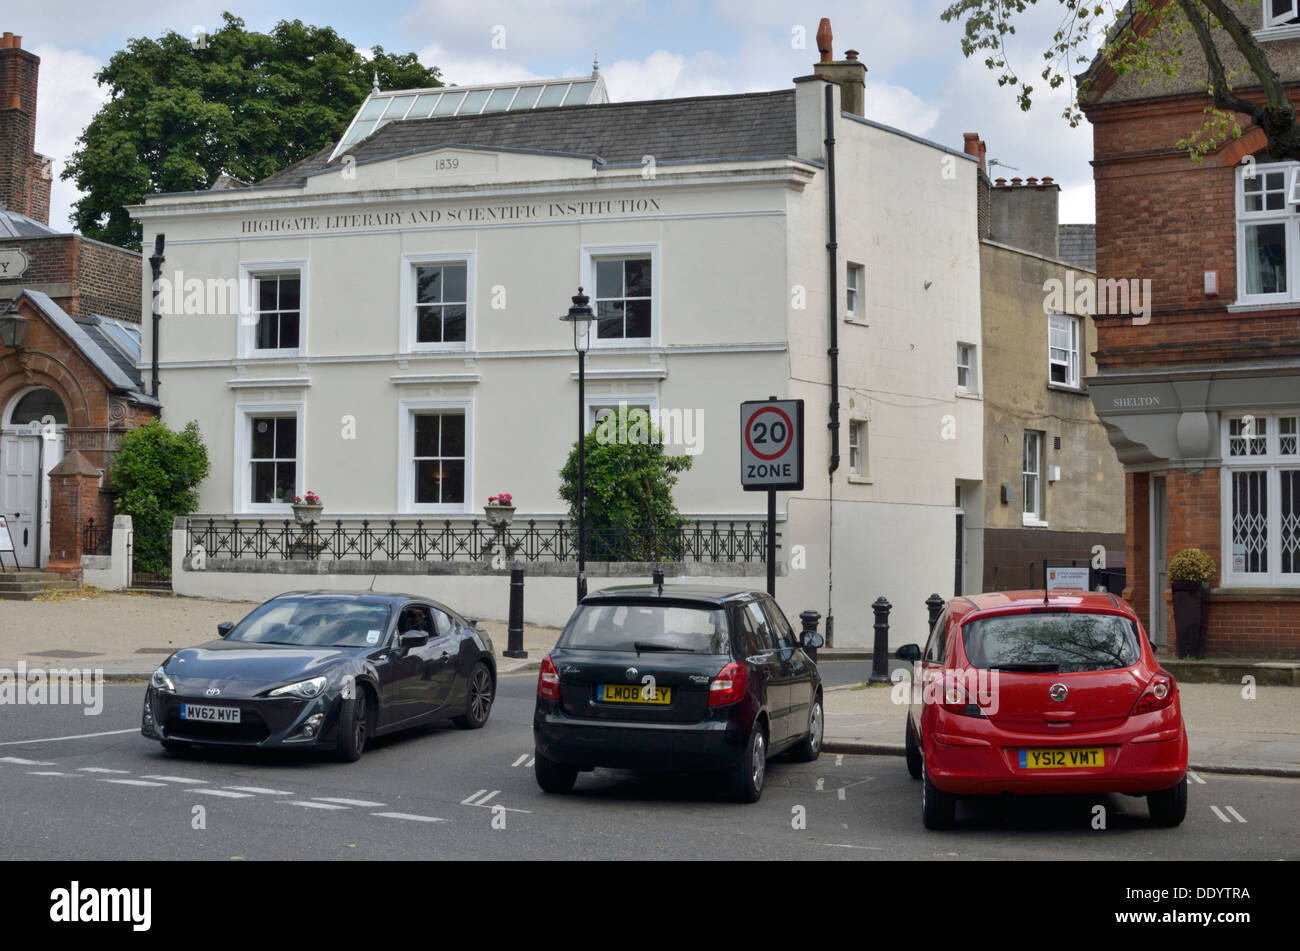 Highgate literarischen und wissenschaftlichen Institution, Highgate Village, London, UK. Stockfoto